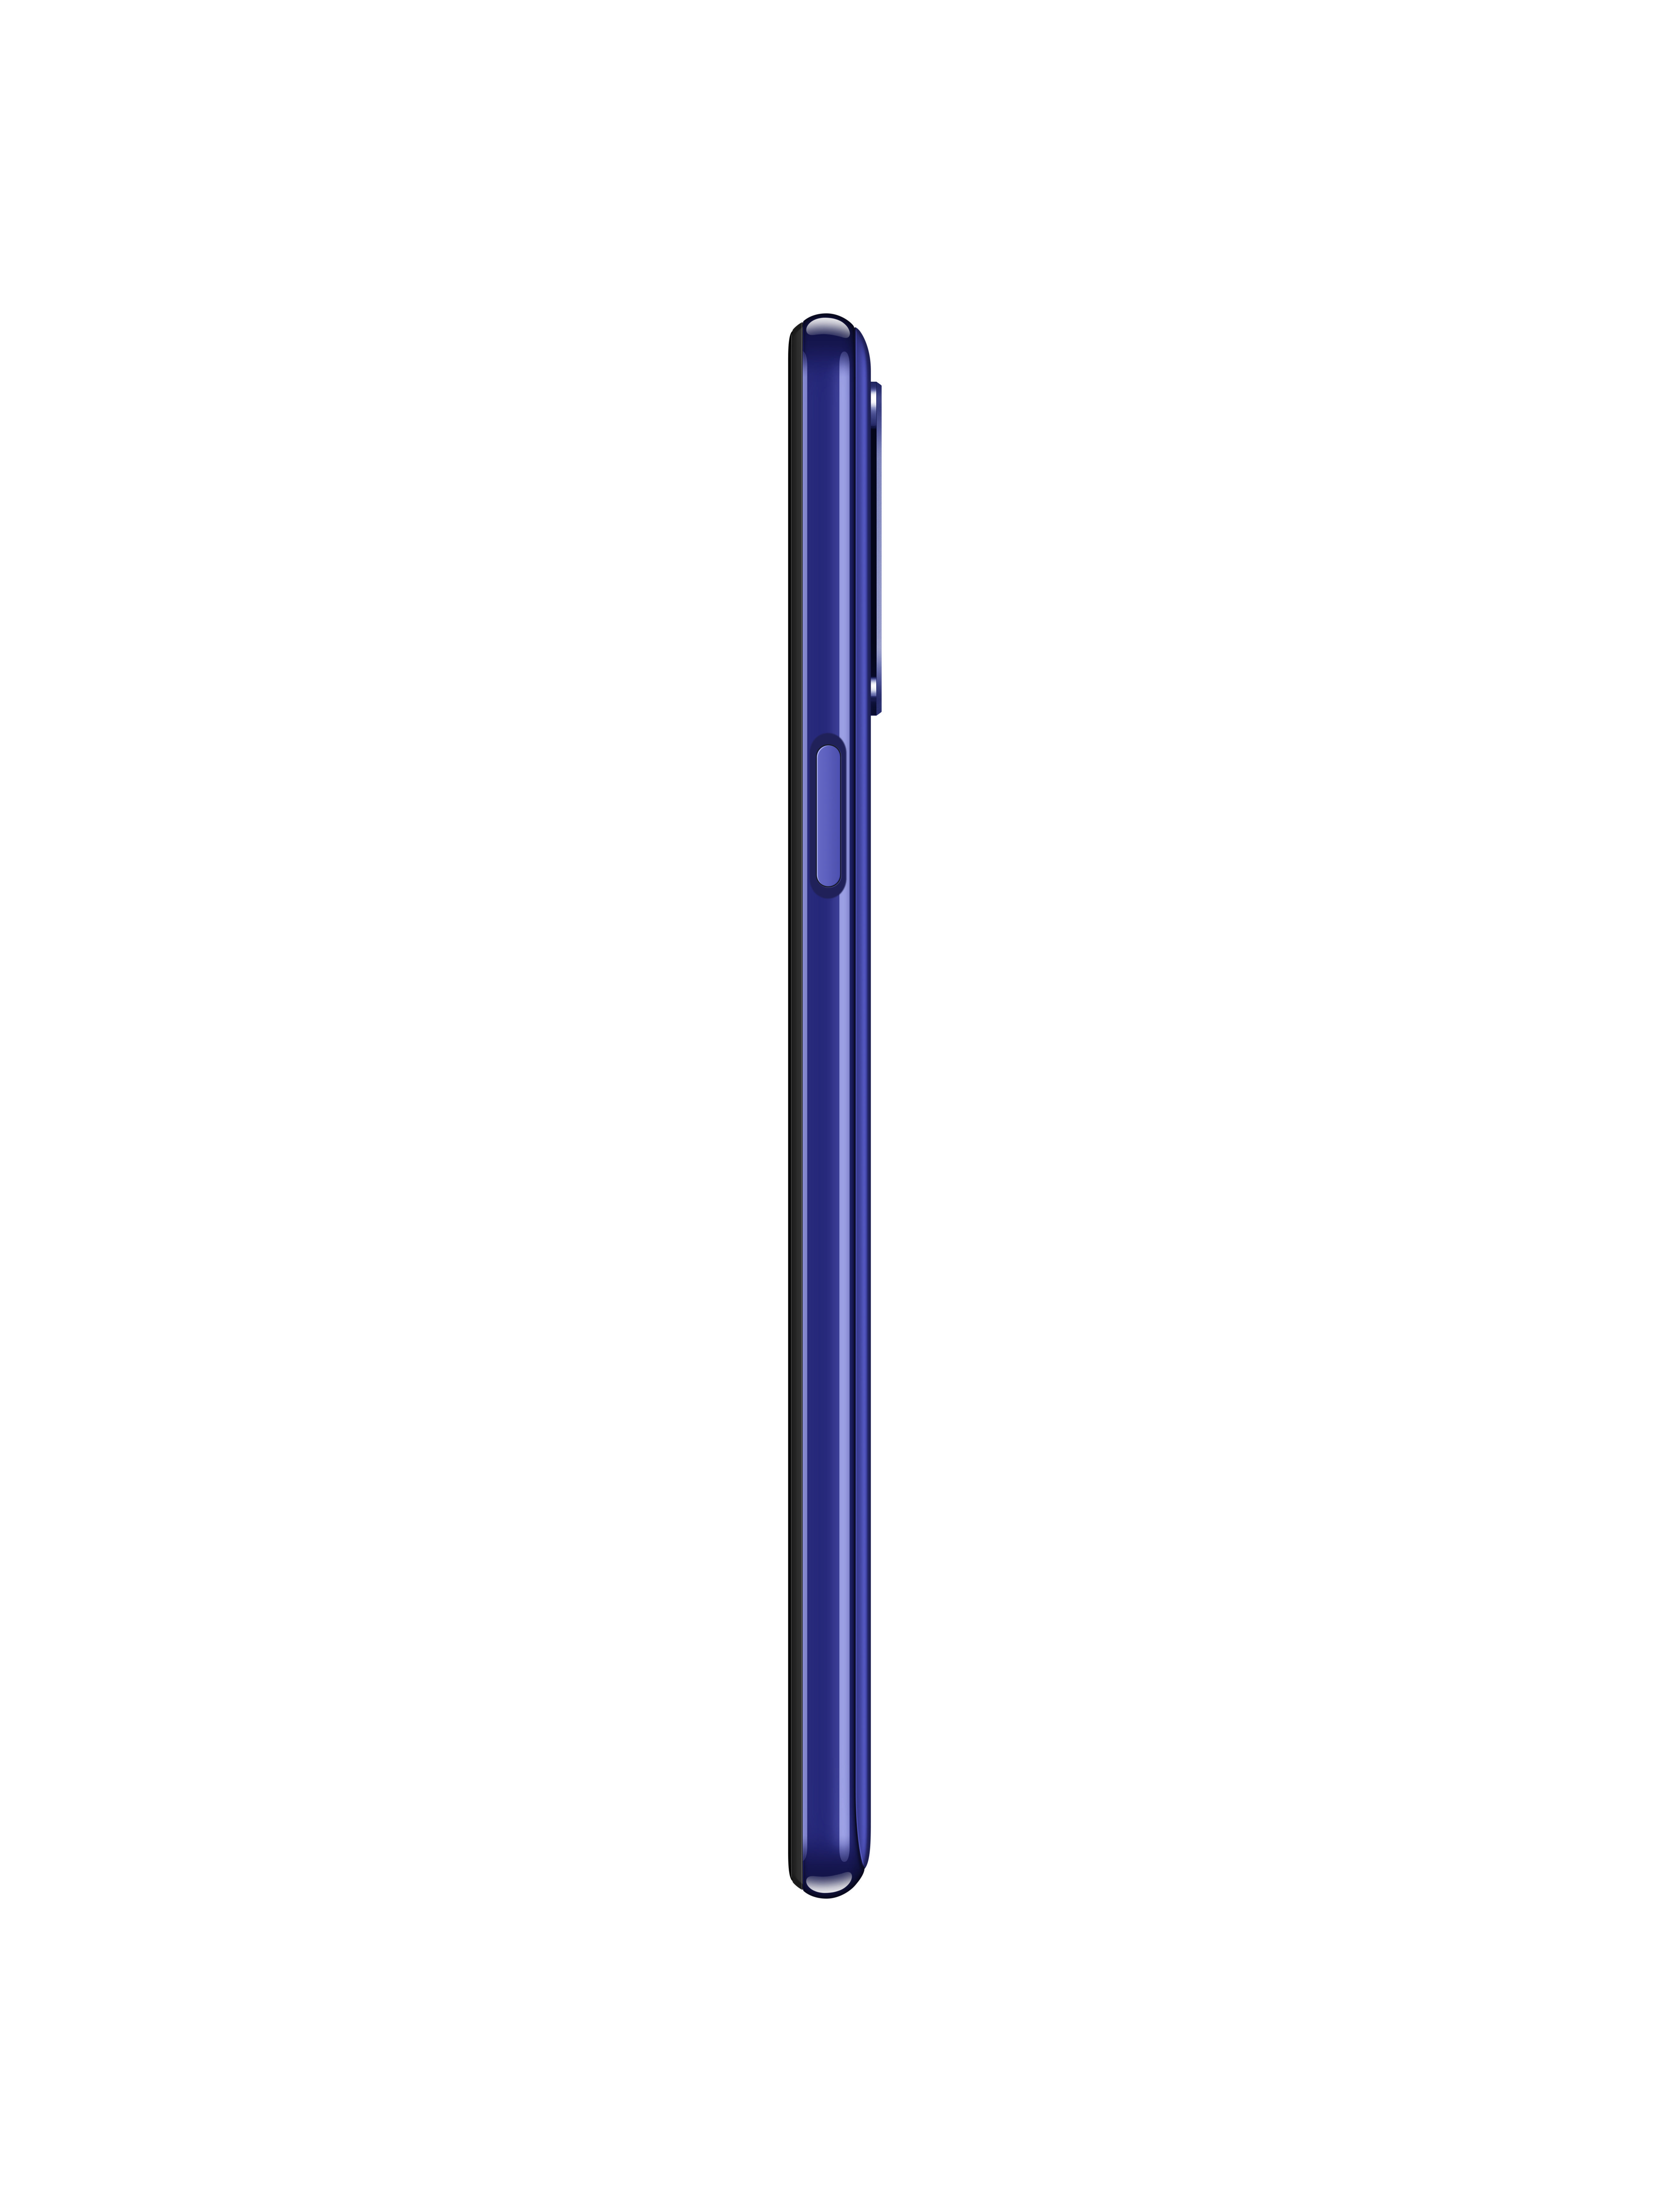 SIM LG Dual GB K52 64 Blau